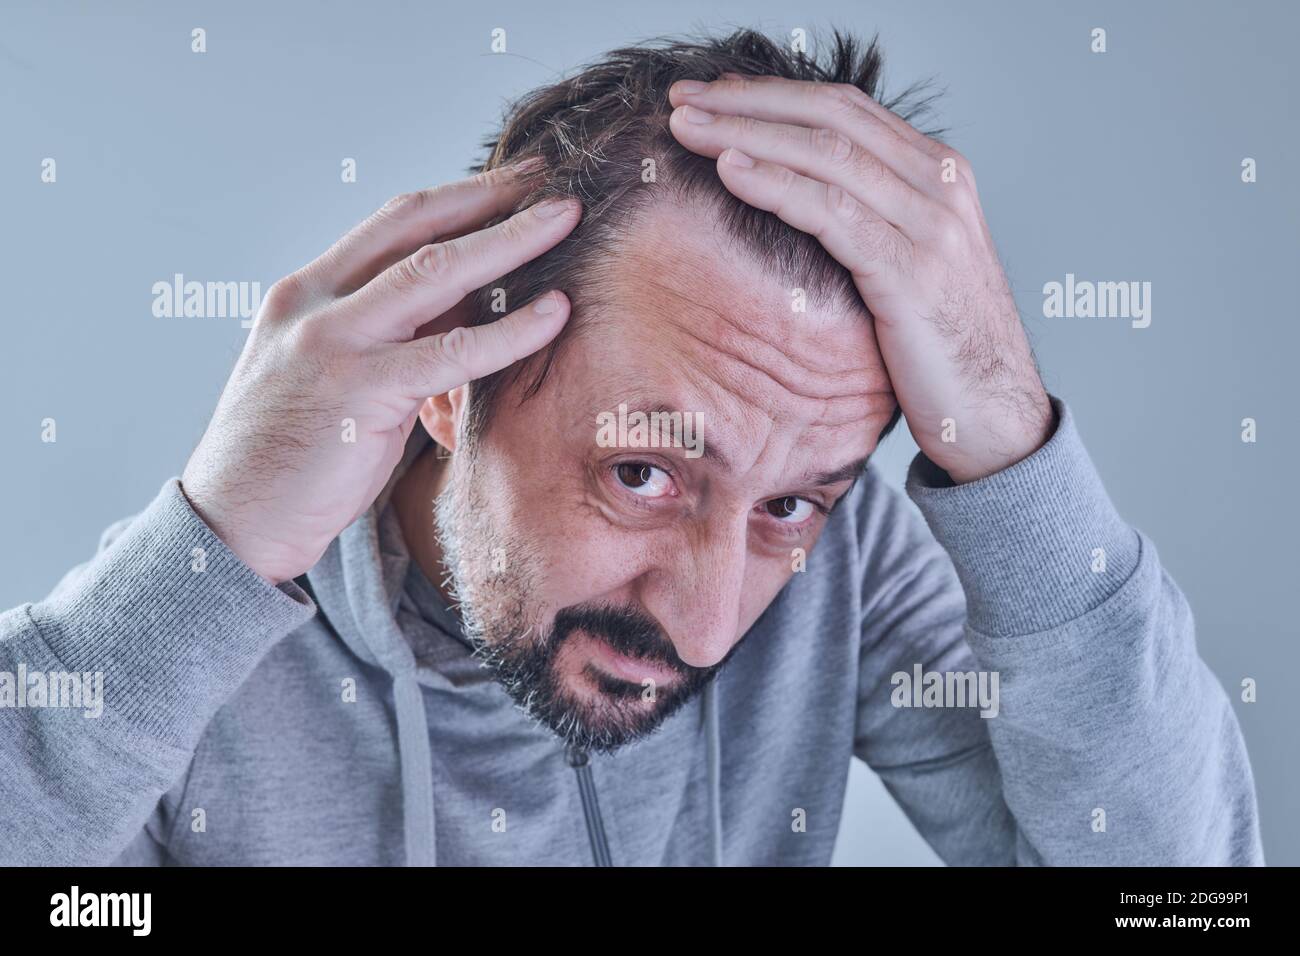 Haarausfall. Mann besorgt über den Verlust von Haaren auf seiner Stirn und Tempel. Porträt eines erwachsenen kaukasischen Mannes in seinen 40er Jahren. Stockfoto